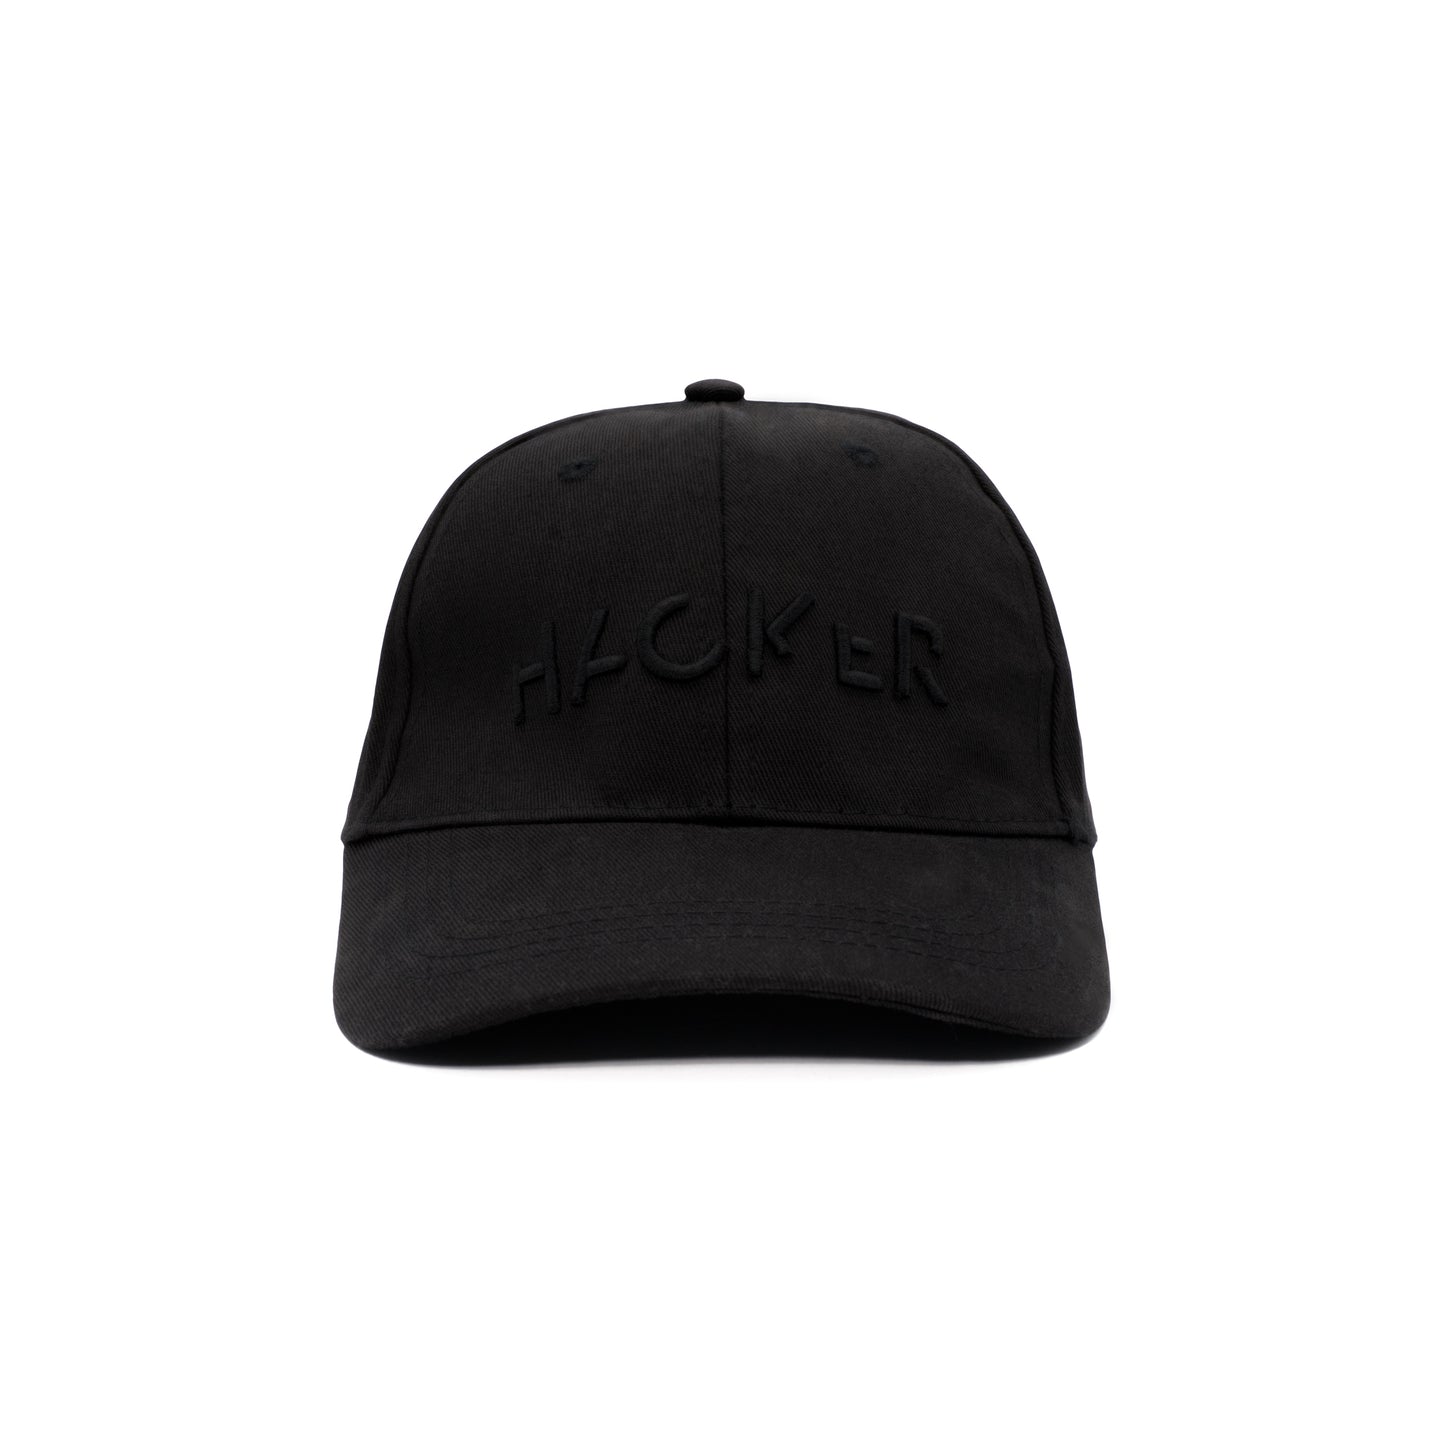 SPYSCAPE Hacker Cap